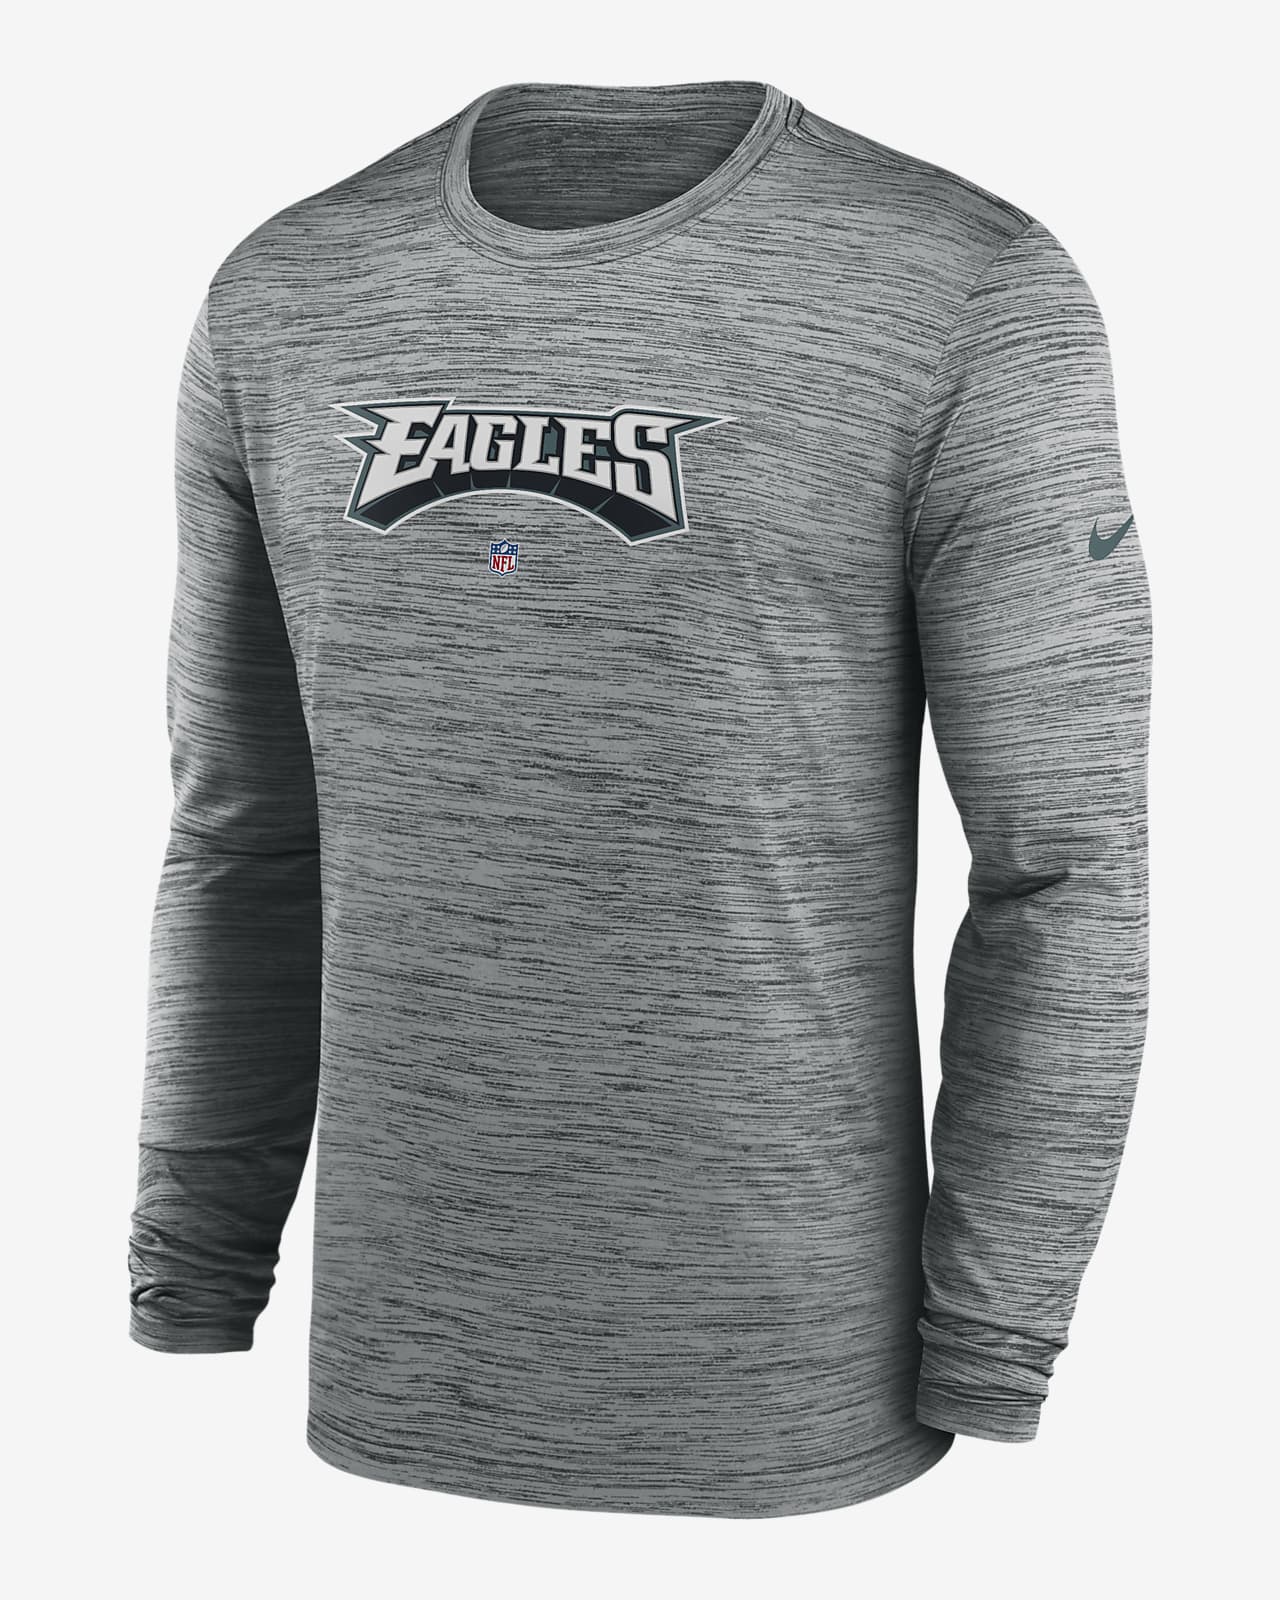 Nike Dri-FIT Sideline Velocity (NFL Philadelphia Eagles) Men's Long-Sleeve  T-Shirt.